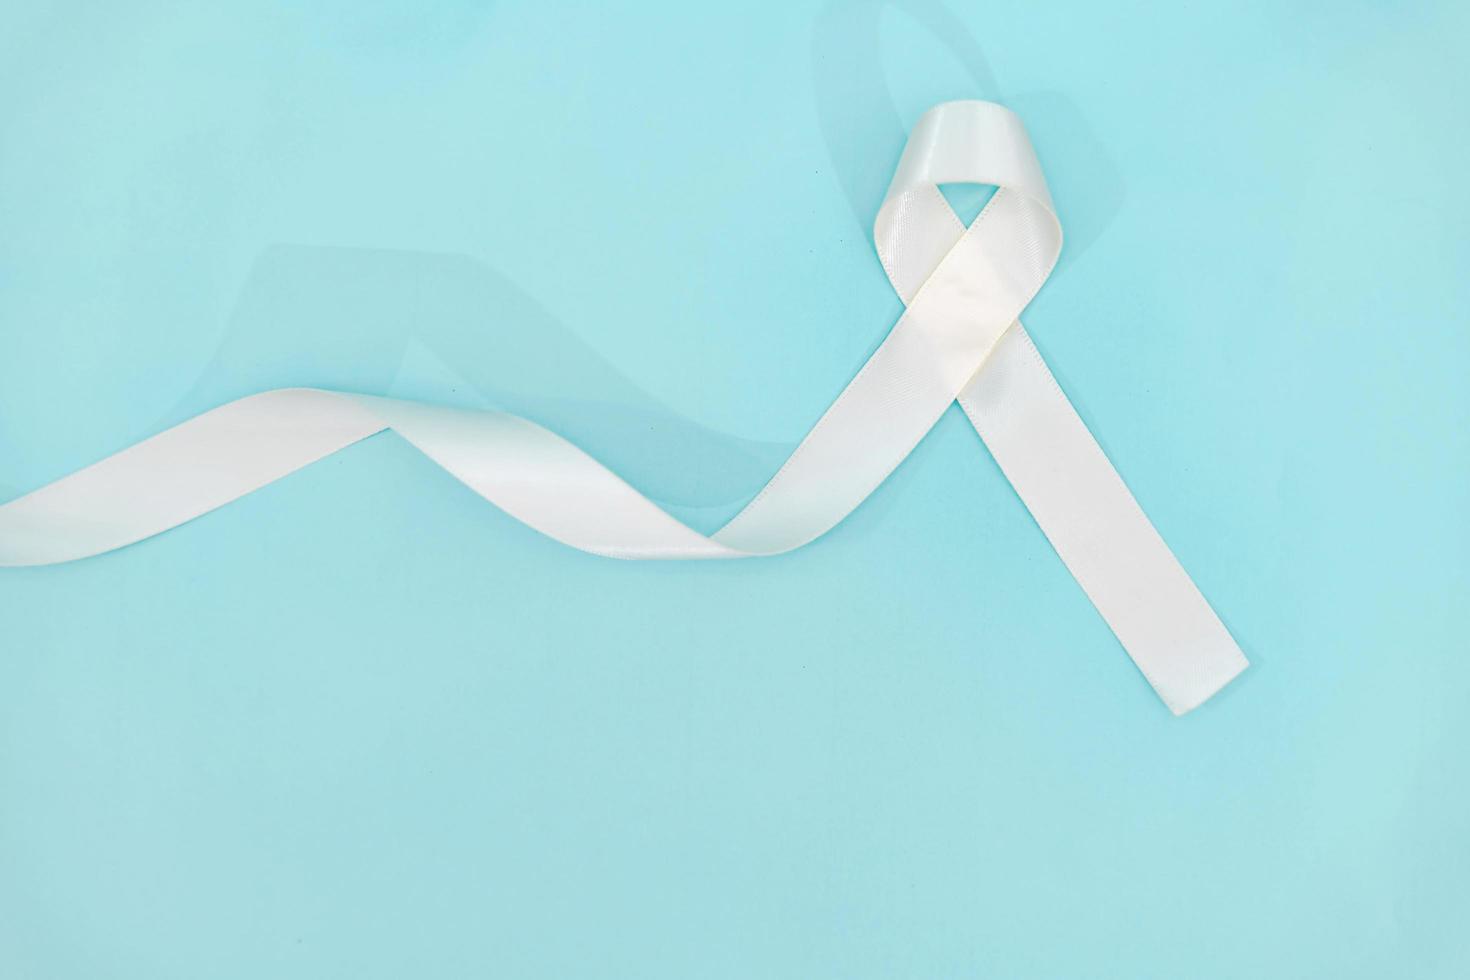 mês de conscientização do câncer de pulmão com fita branca. conceito de saúde e medicina. foto